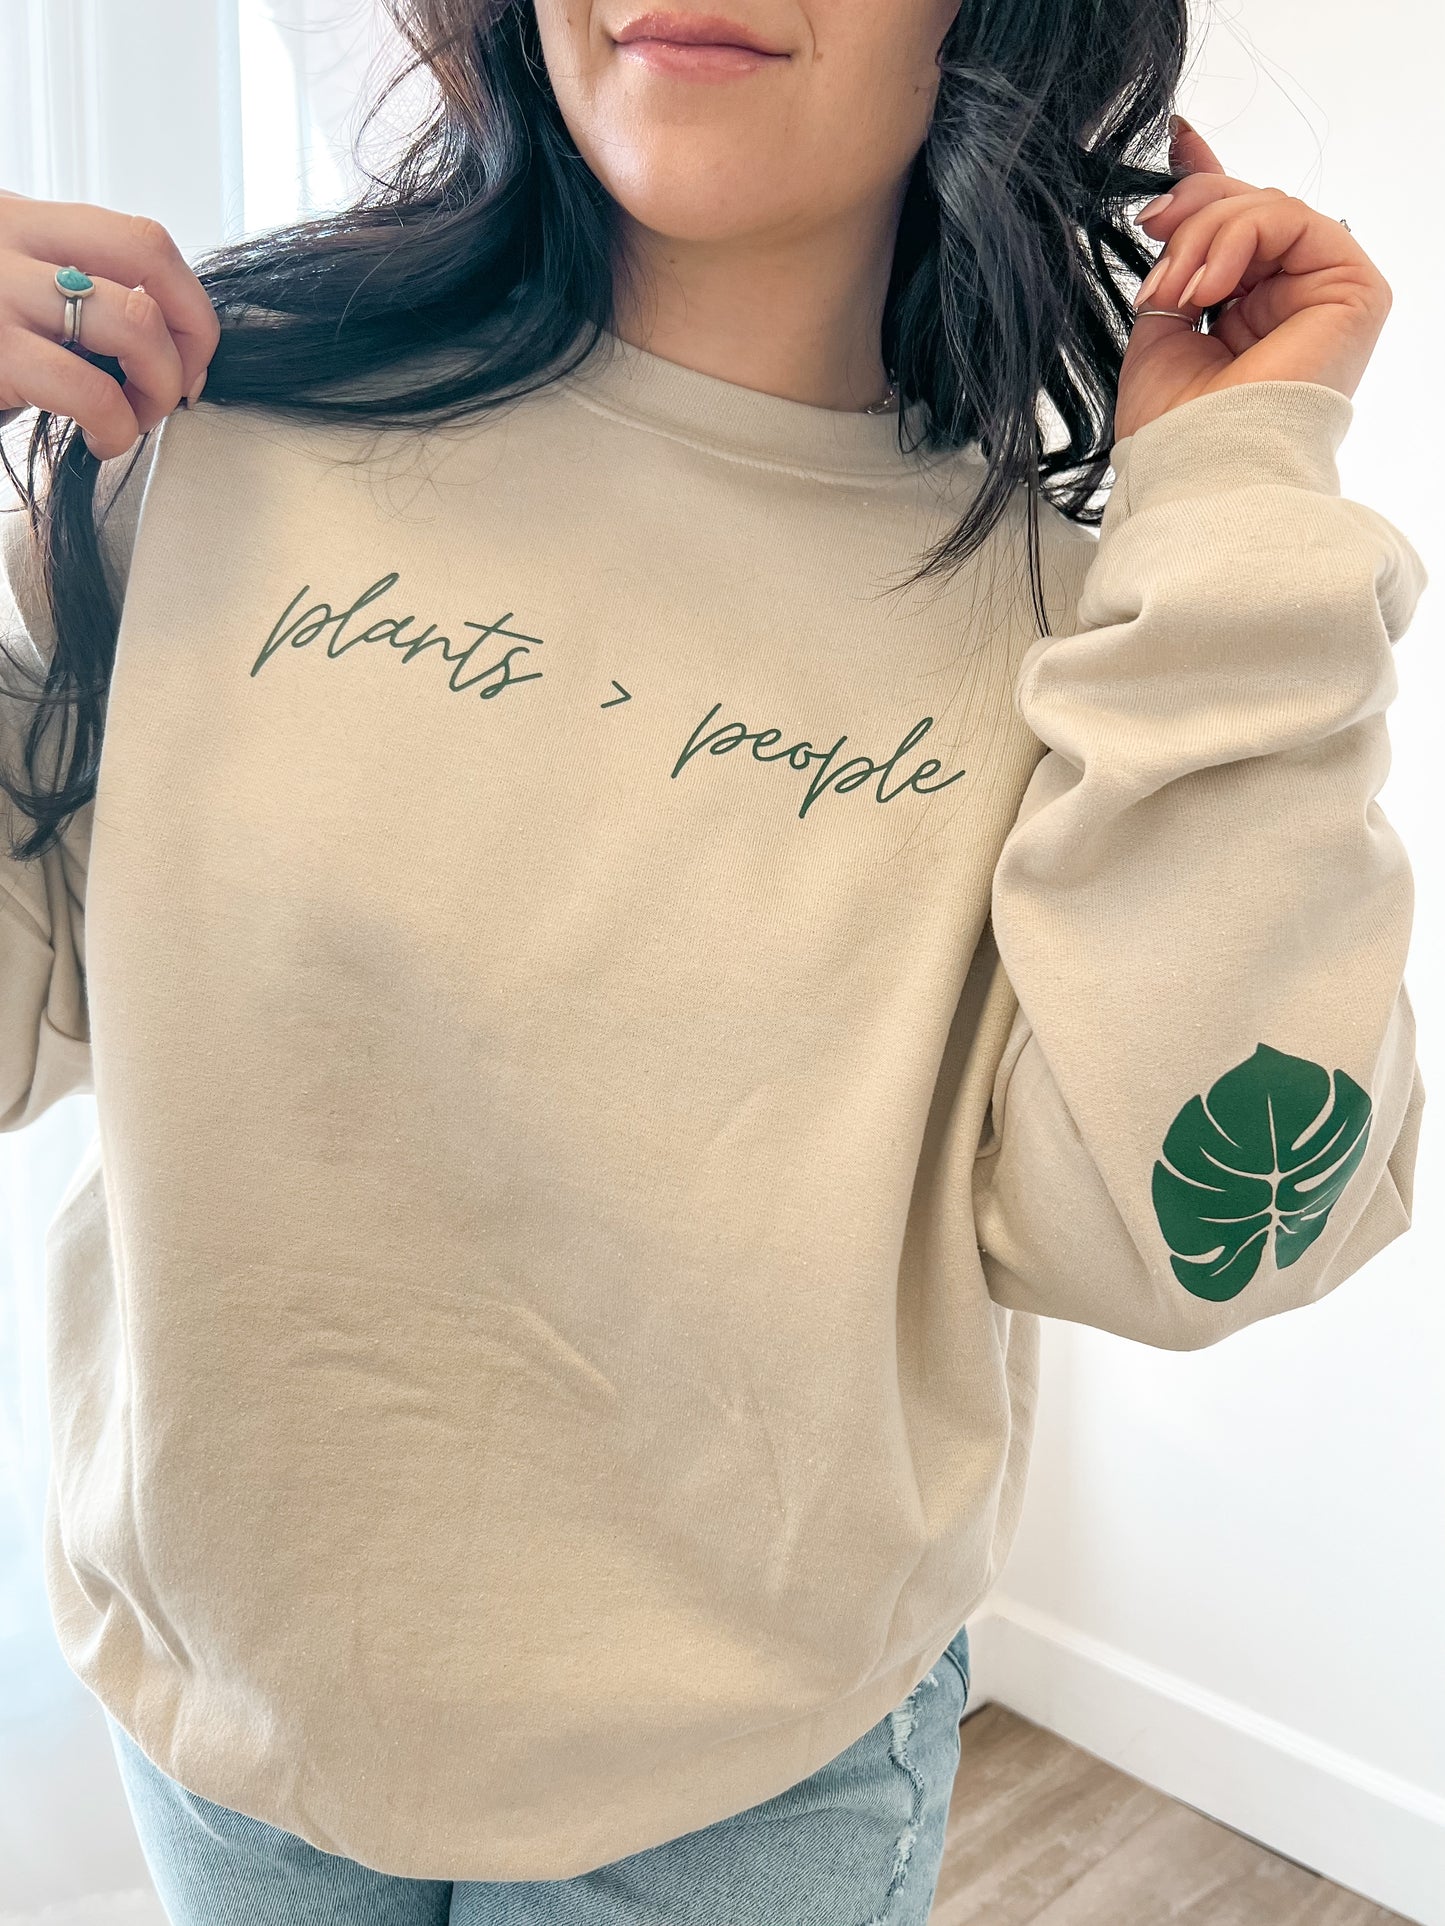 Plants > People Crewneck Sweatshirt